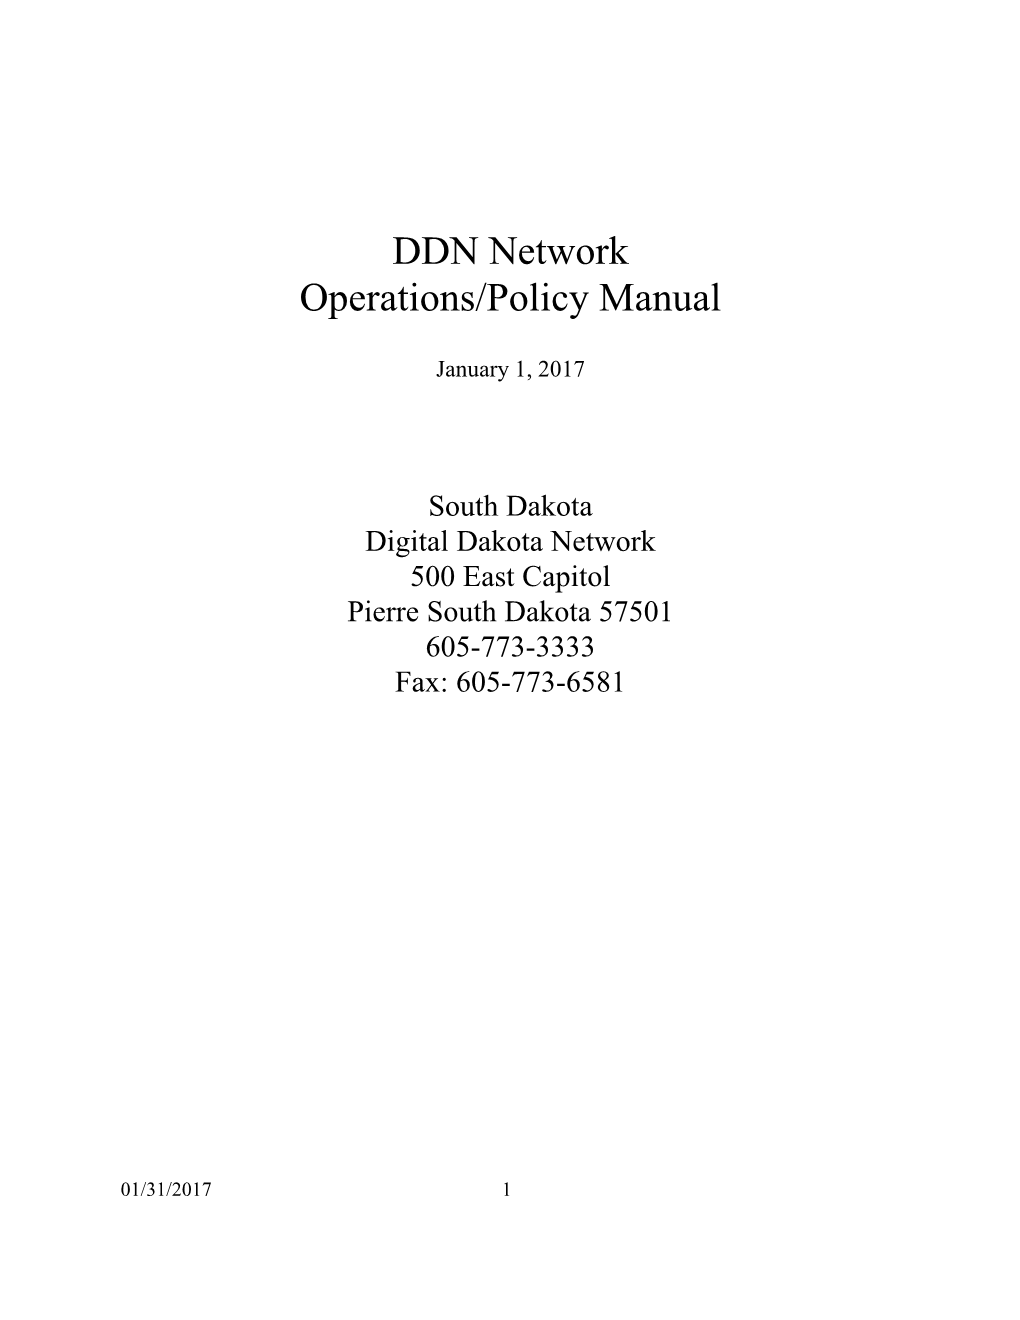 DDN Policy Manual